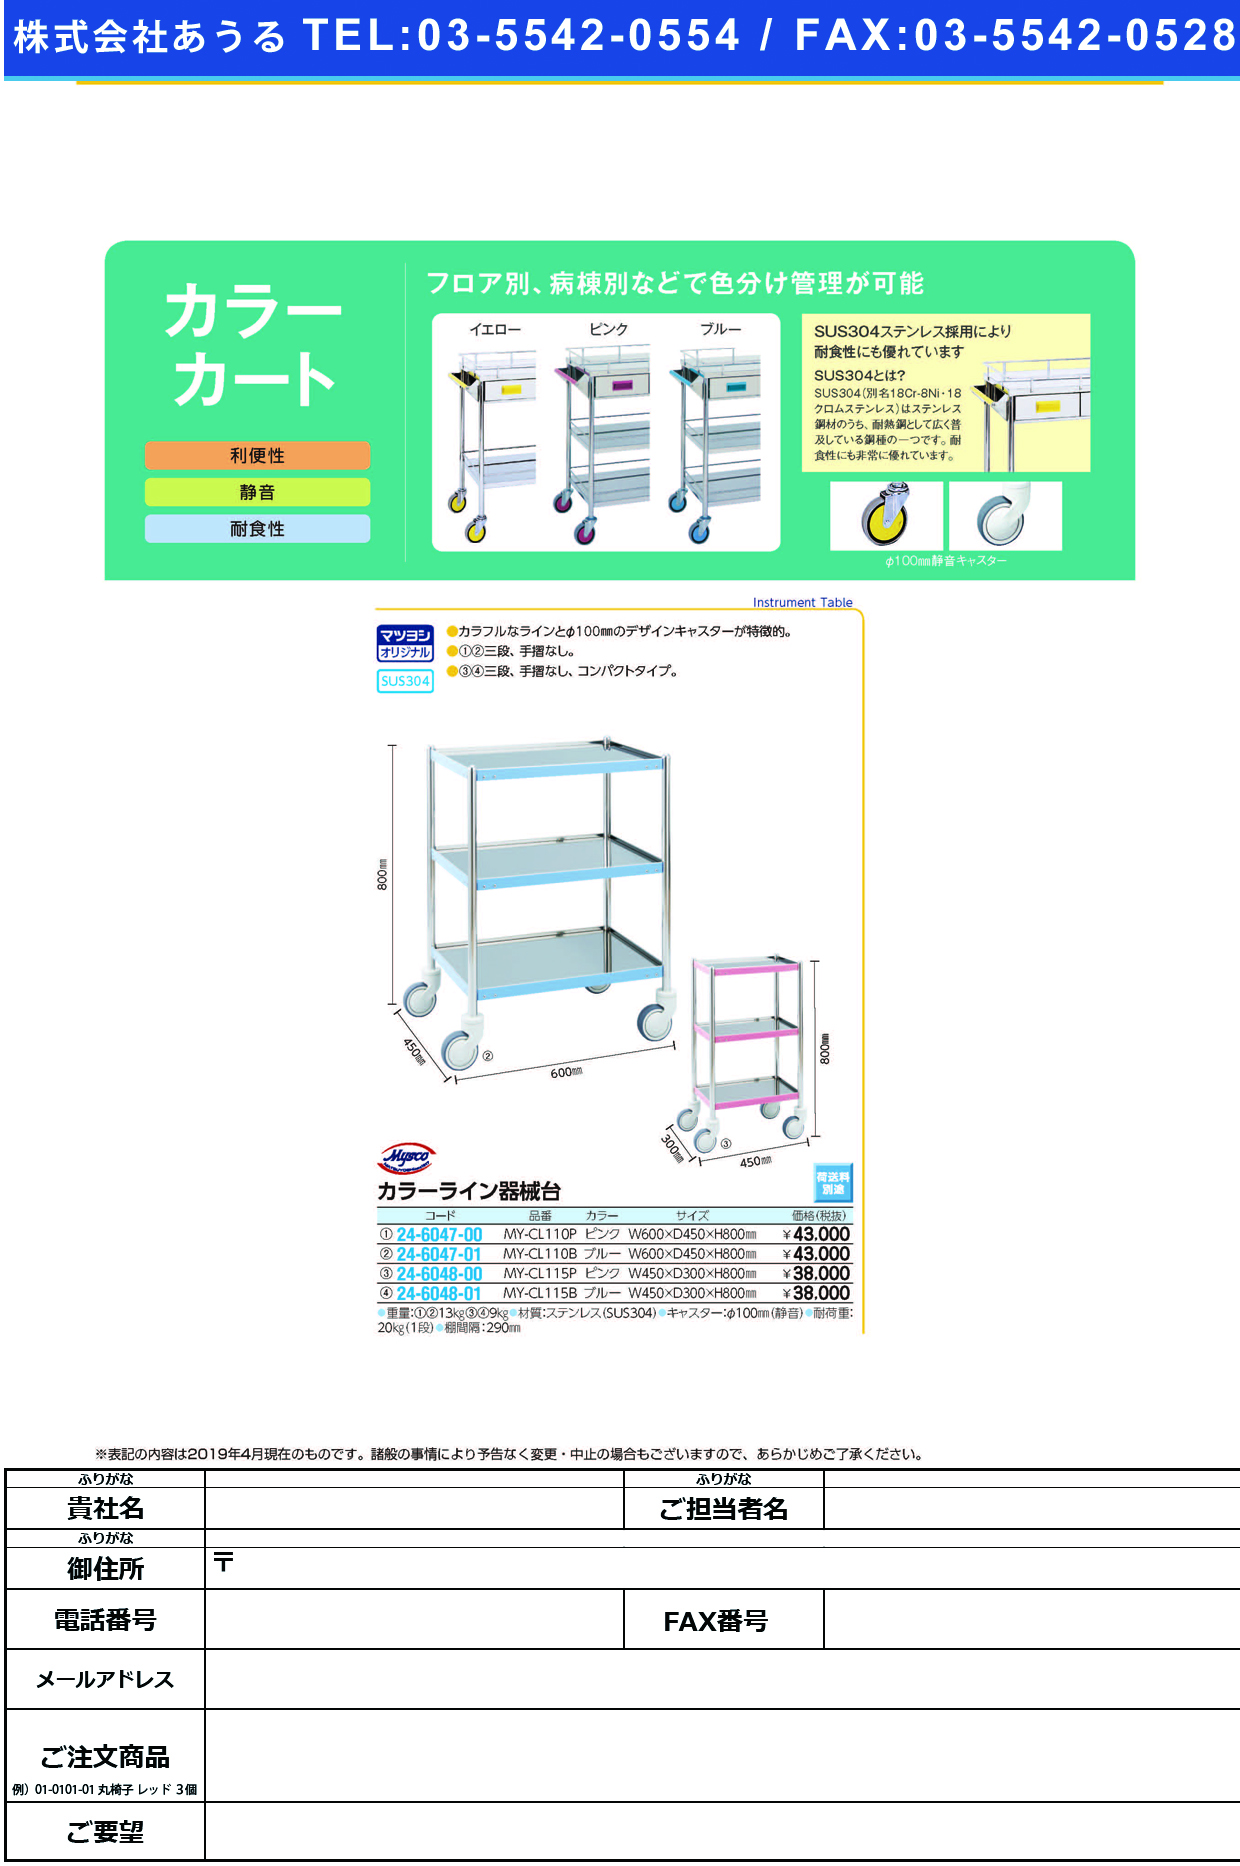 (24-6048-00)カラーライン器械台 MY-CL115P(ﾋﾟﾝｸ) ｶﾗｰﾗｲﾝｷｶｲﾀﾞｲ【1台単位】【2019年カタログ商品】